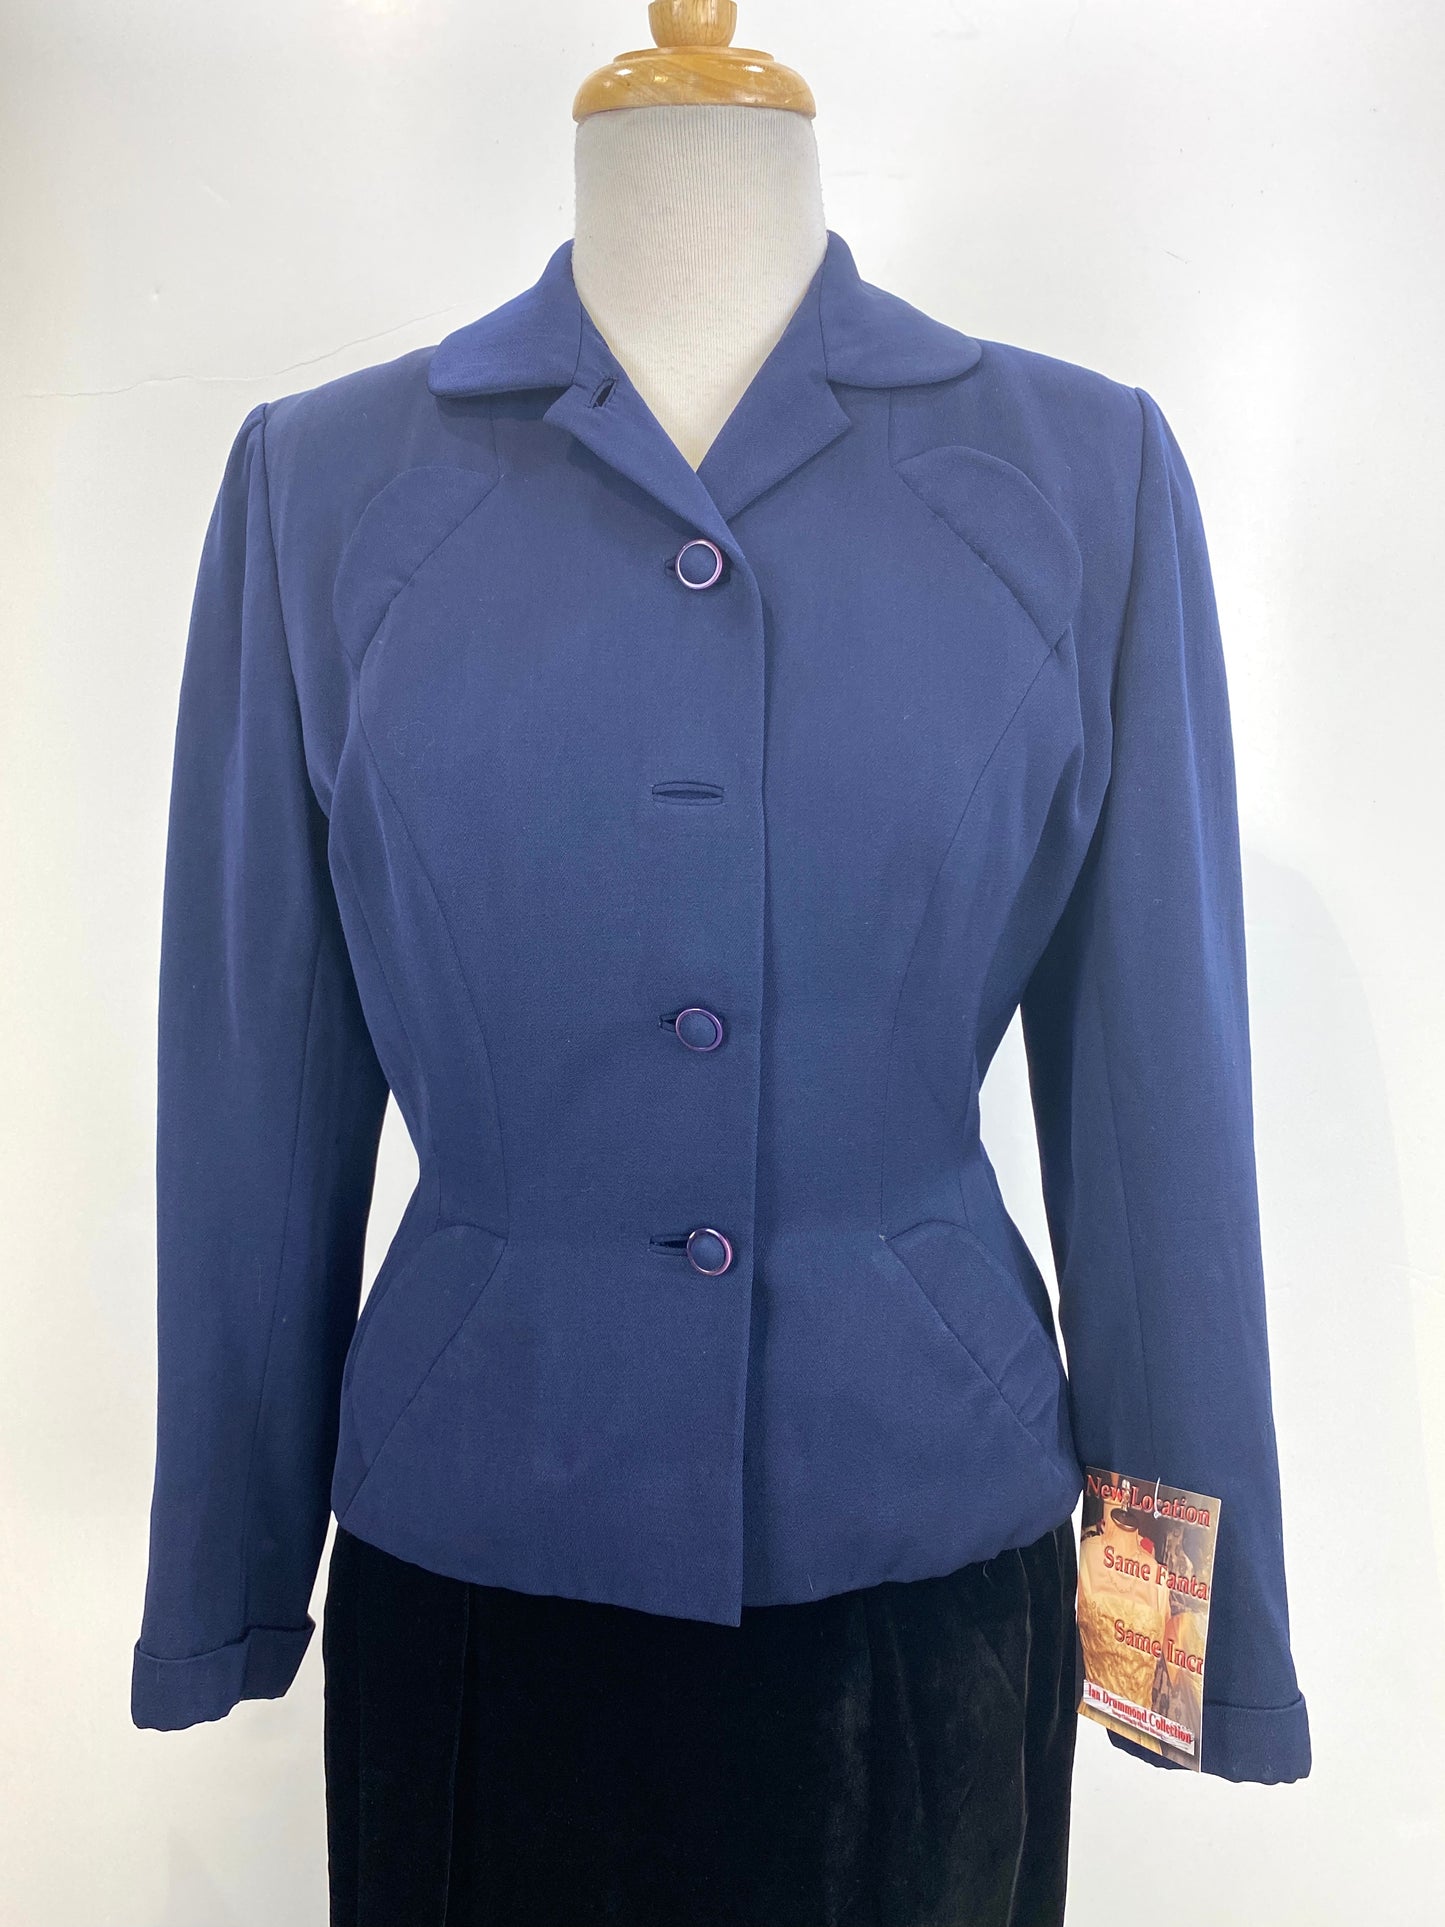 Vintage 1940s Women's Tailored Navy Wool-Gabardine Jacket, Small